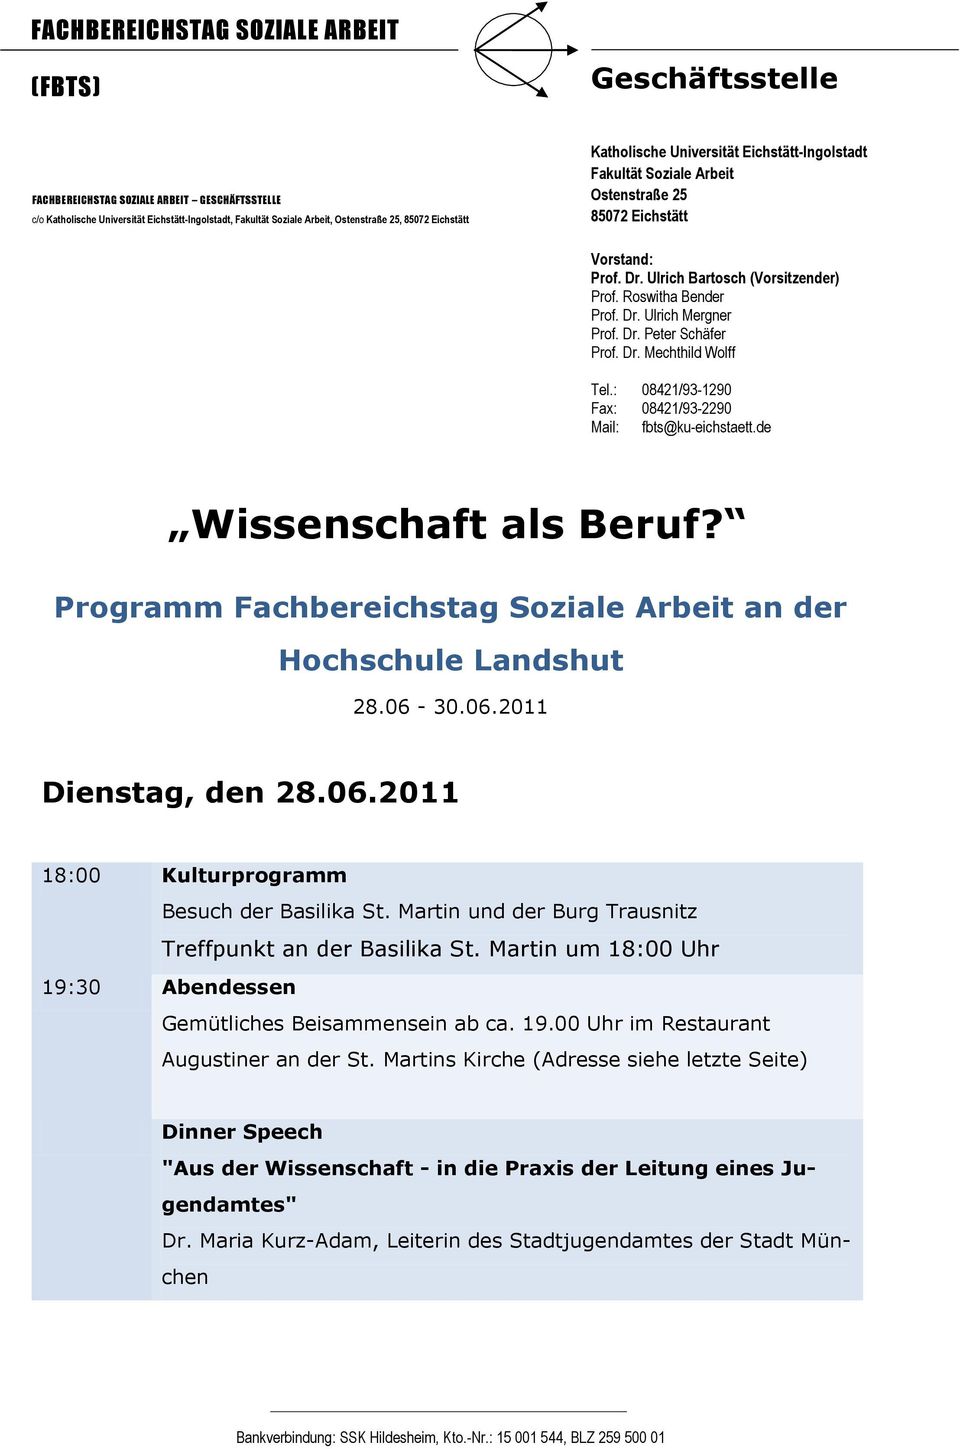 Dr. Peter Schäfer Prof. Dr. Mechthild Wolff Tel.: 08421/93-1290 Fax: 08421/93-2290 Mail: fbts@ku-eichstaett.de Wissenschaft als Beruf?